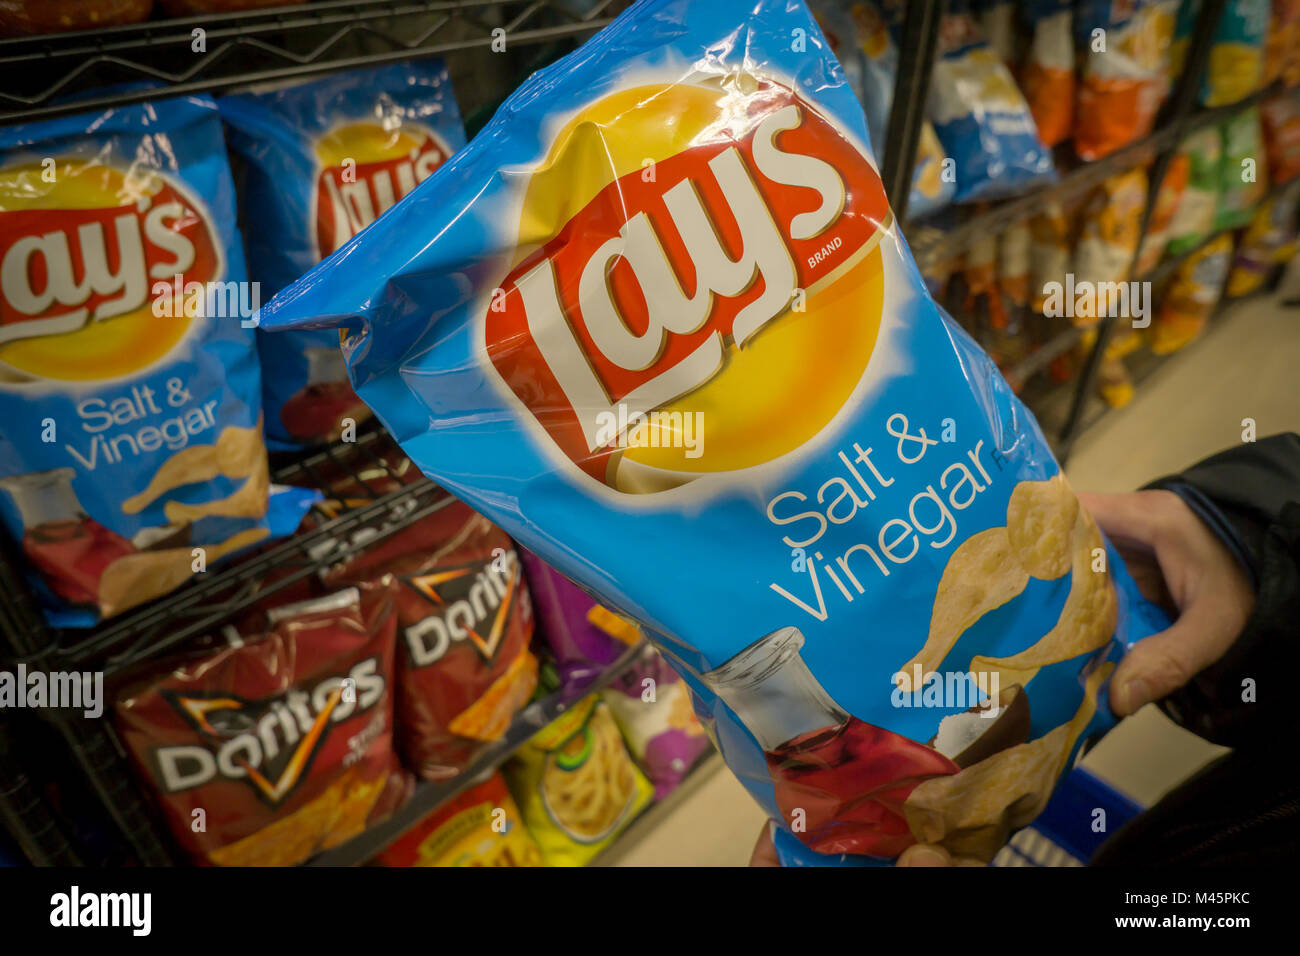 Un comprador elige una bolsa de patatas fritas marca Frito-Lay de PepsiCo  snacks en un supermercado en Nueva York el lunes, 12 de febrero de 2018.  PepsiCo está previsto liberar sus ganancias